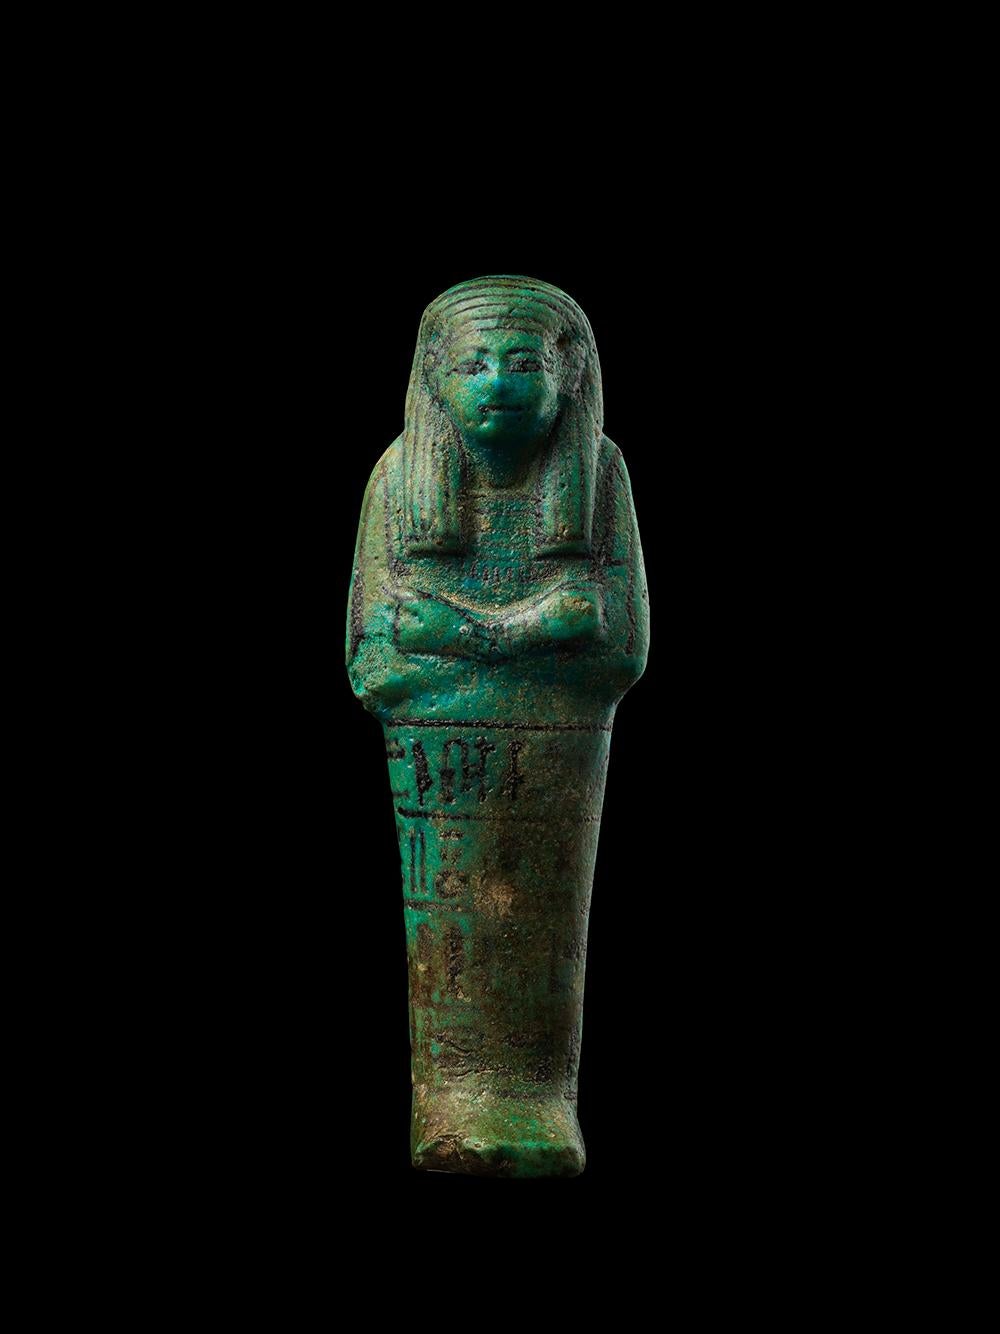 Un ushabti momiforme en faïence bleue. Quatre registres de caractères hiéroglyphiques sont peints autour de la moitié inférieure de l'ushabti, avec une colonne verticale de hiéroglyphes au centre du dos. L'inscription dédie l'ushabti au scribe royal